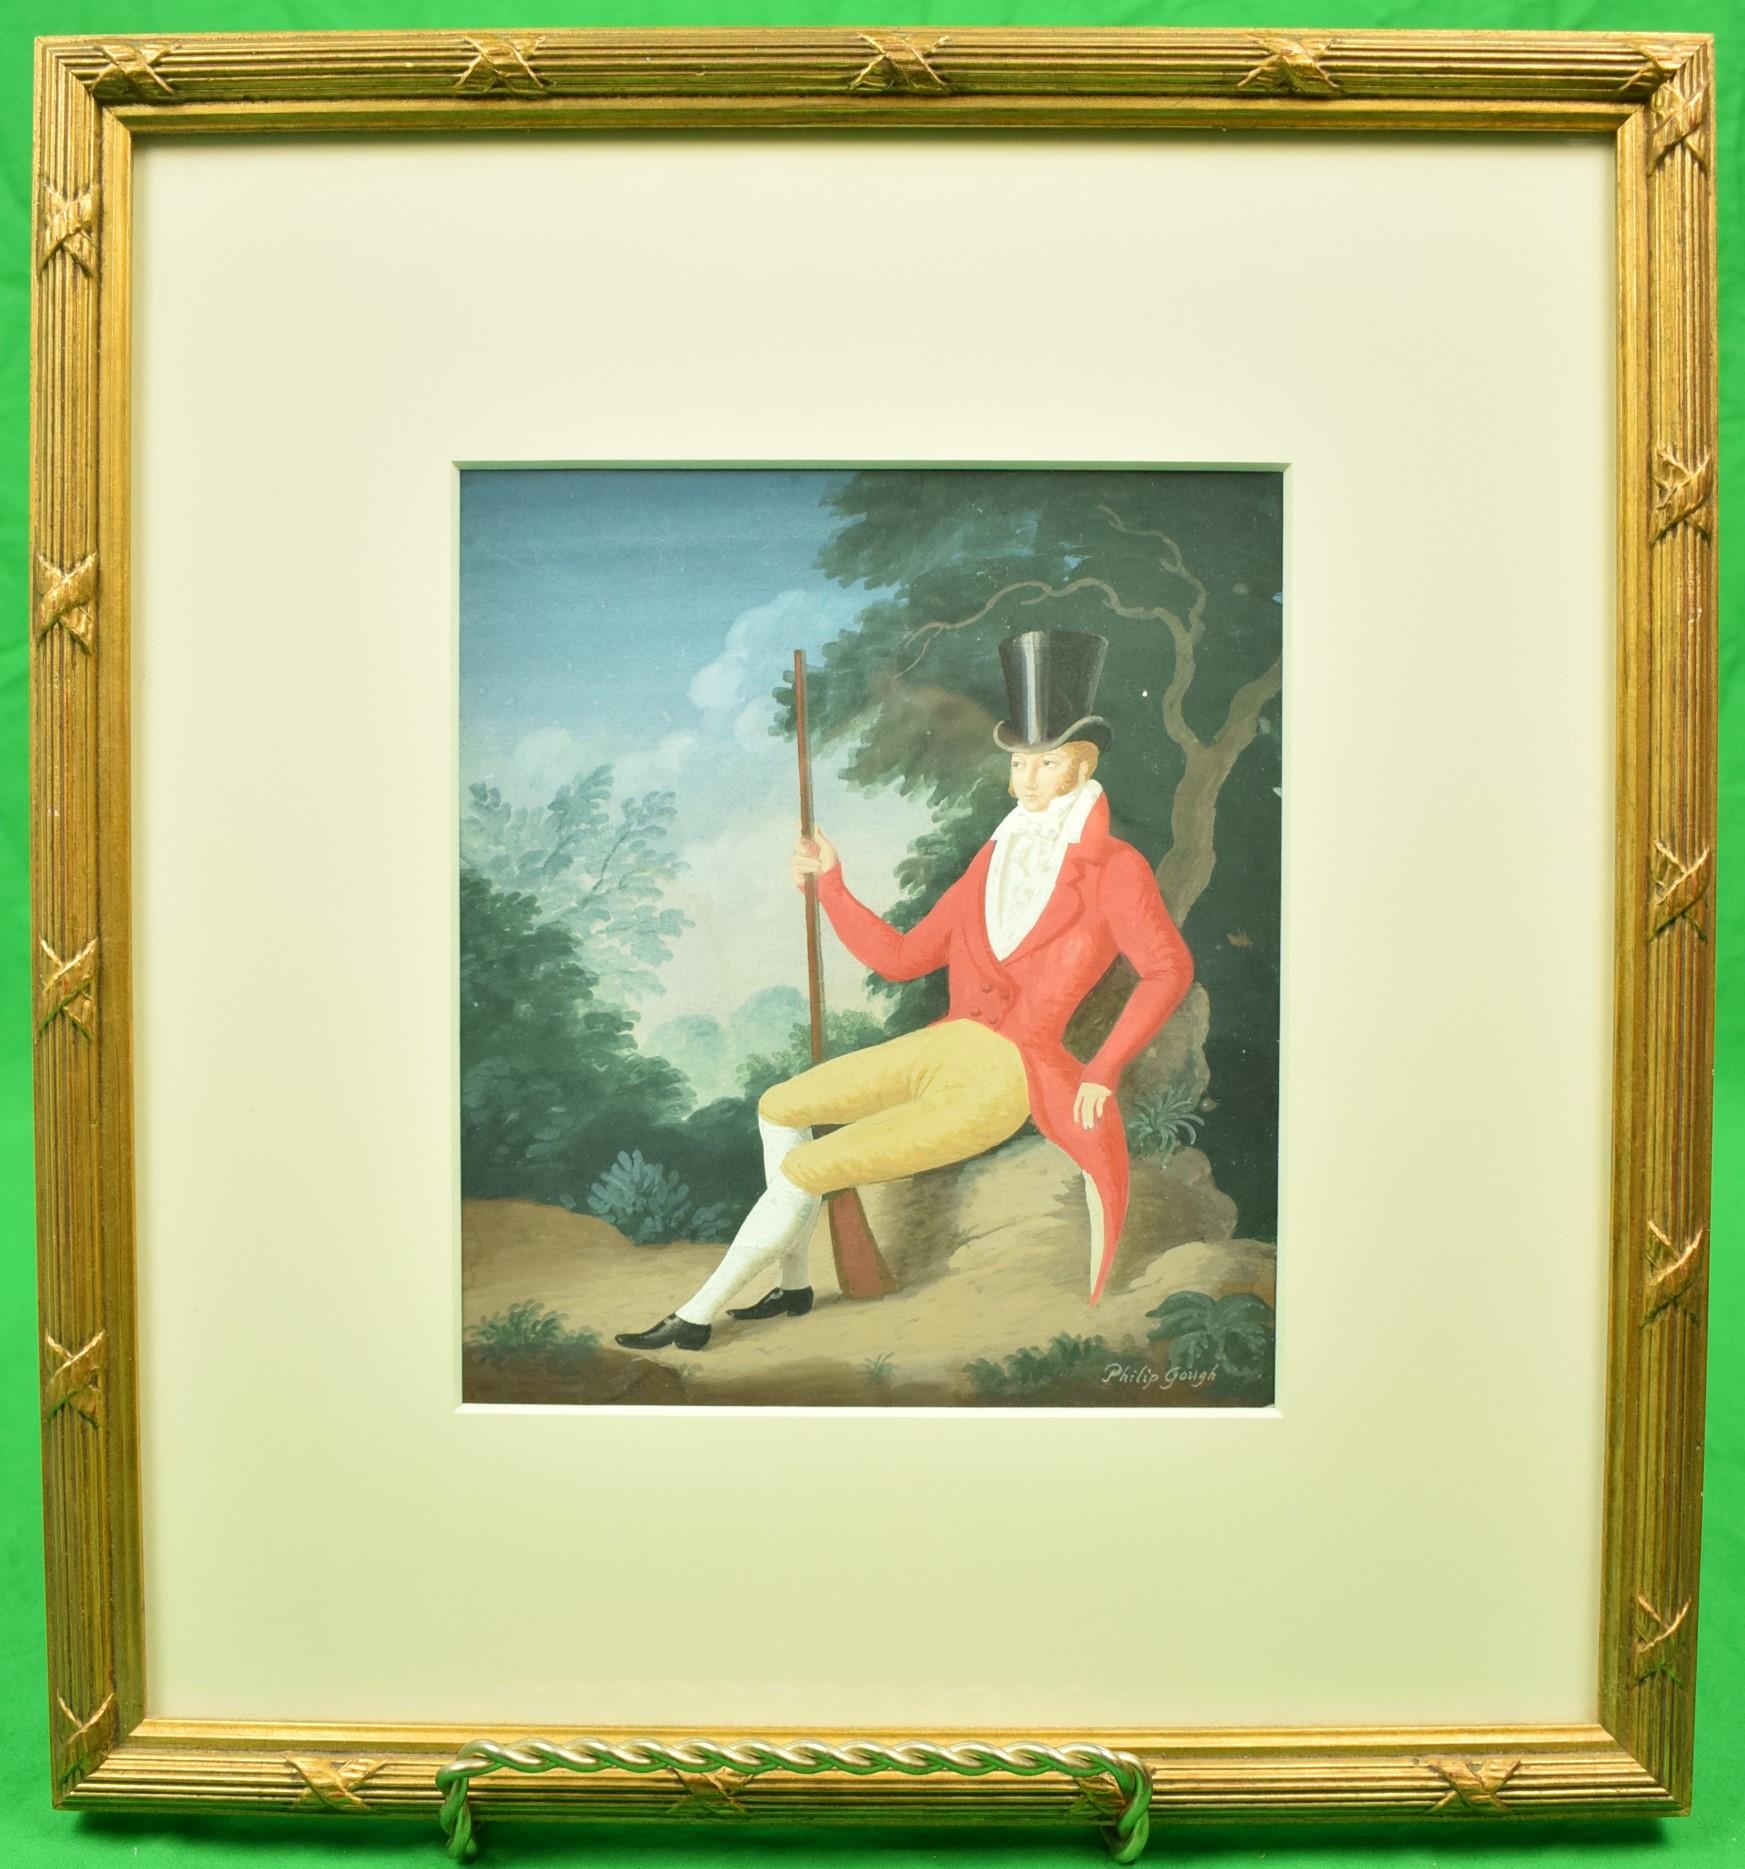 Classique gouache originale de Philip Gough (1909-1986) signée (LR) pour l'illustration de la jaquette du livre 'The Foundling' de Georgette Heyer.

Art Sz : 7 7/8 "H x 7 "W

Taille du cadre : 15 1/4 "H x 14 1/4 "W